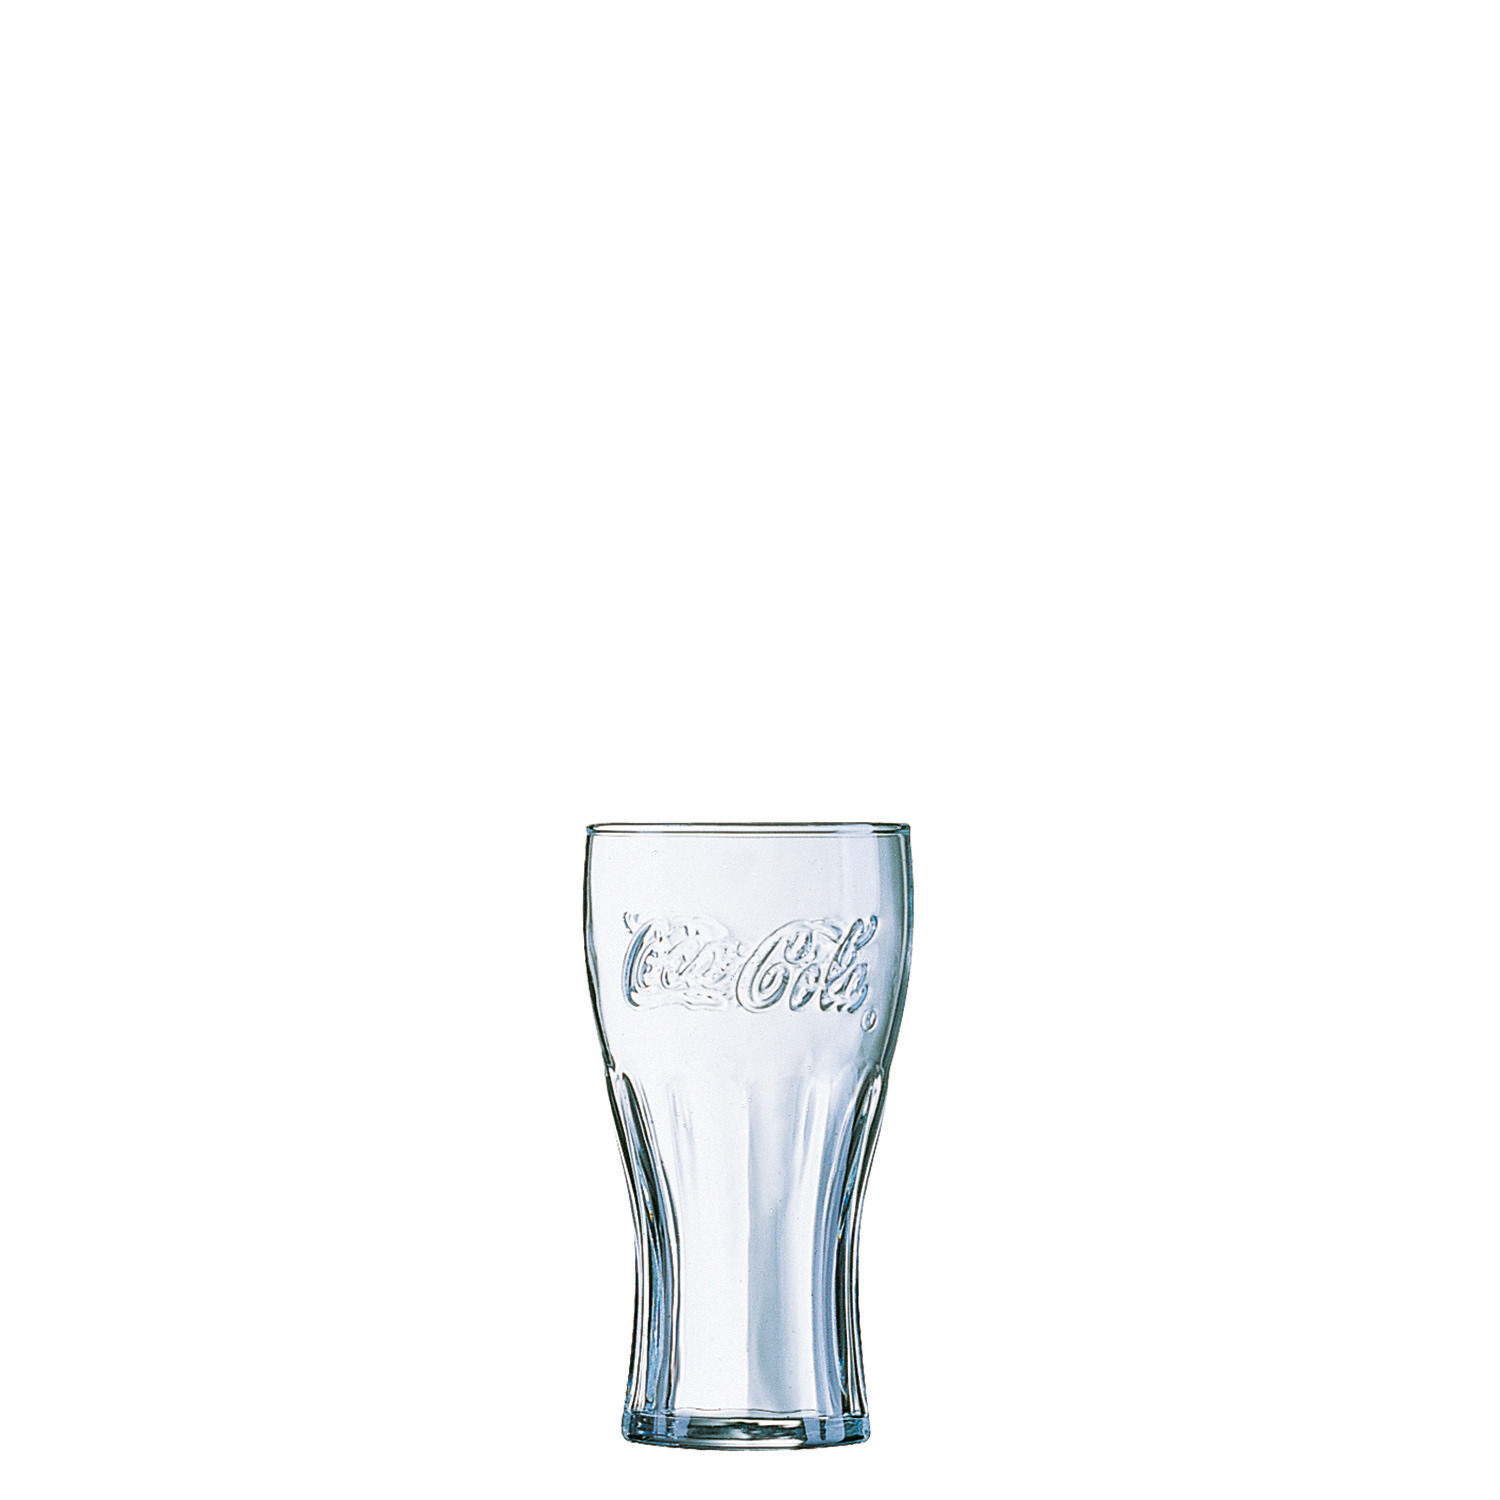 Coca-Cola "FH27" Konturglas 72 mm / 0,27 l 0,20 /-/ transparent